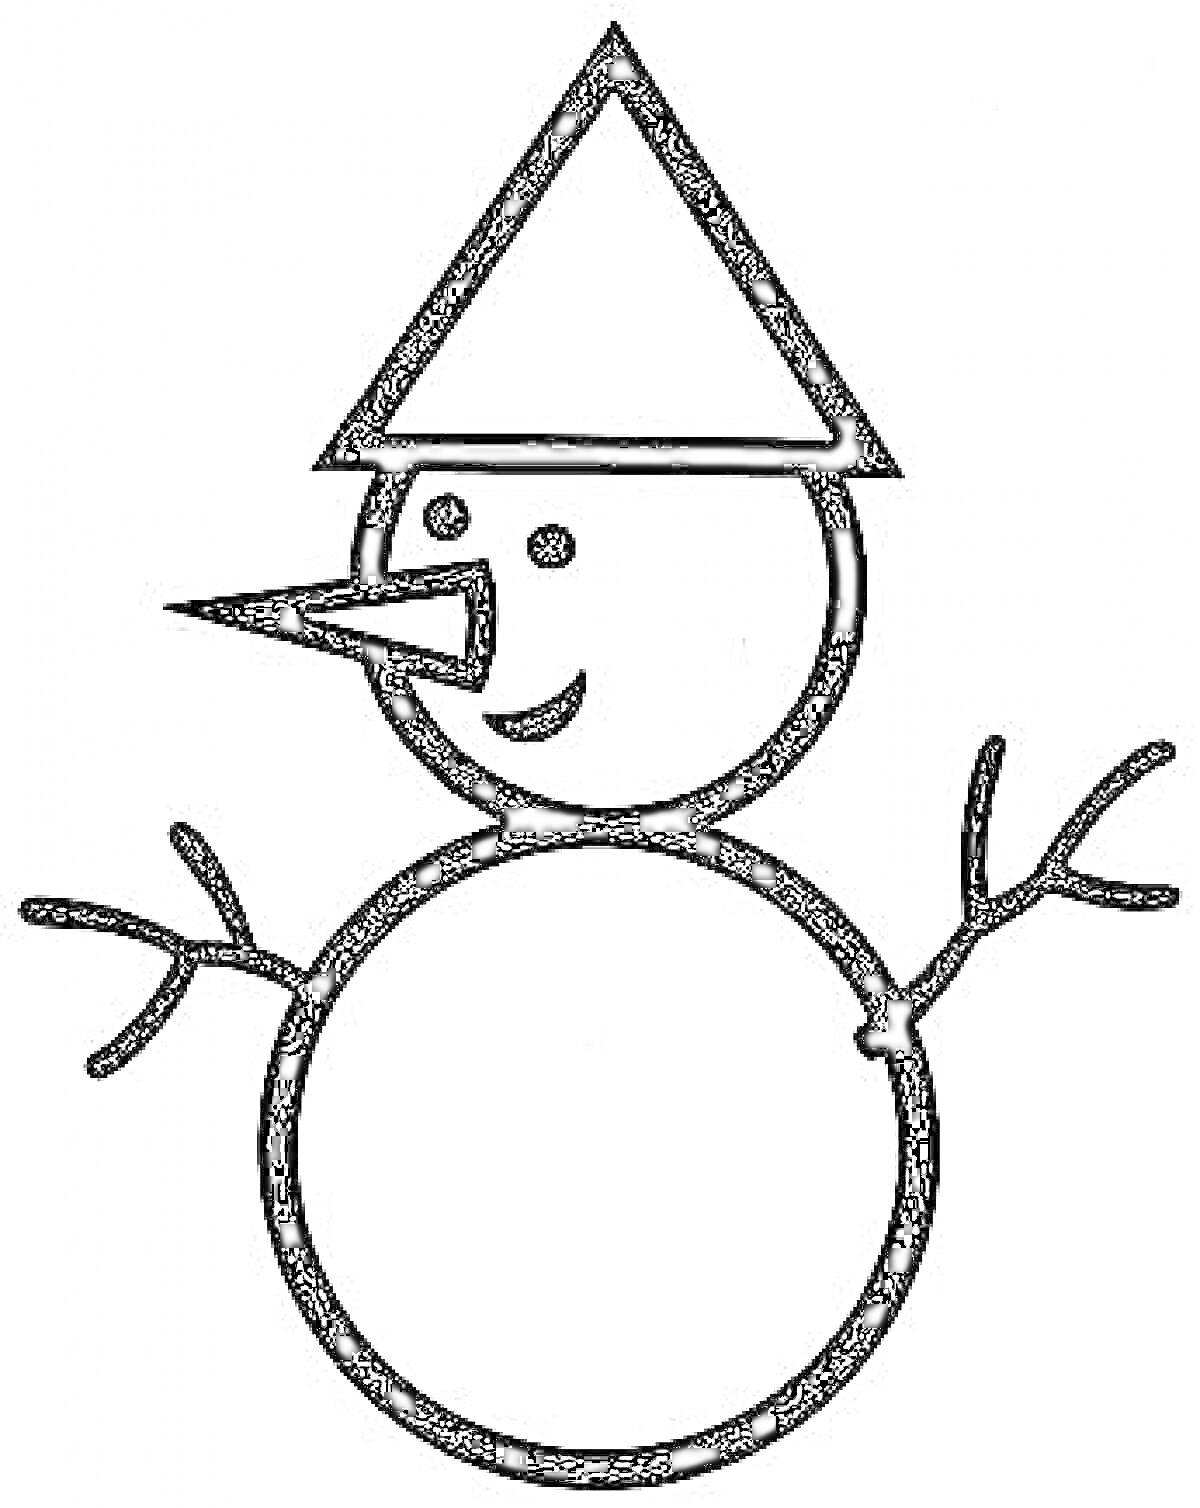 Снеговик с носом-морковкой, руками-палками и треугольной шапкой